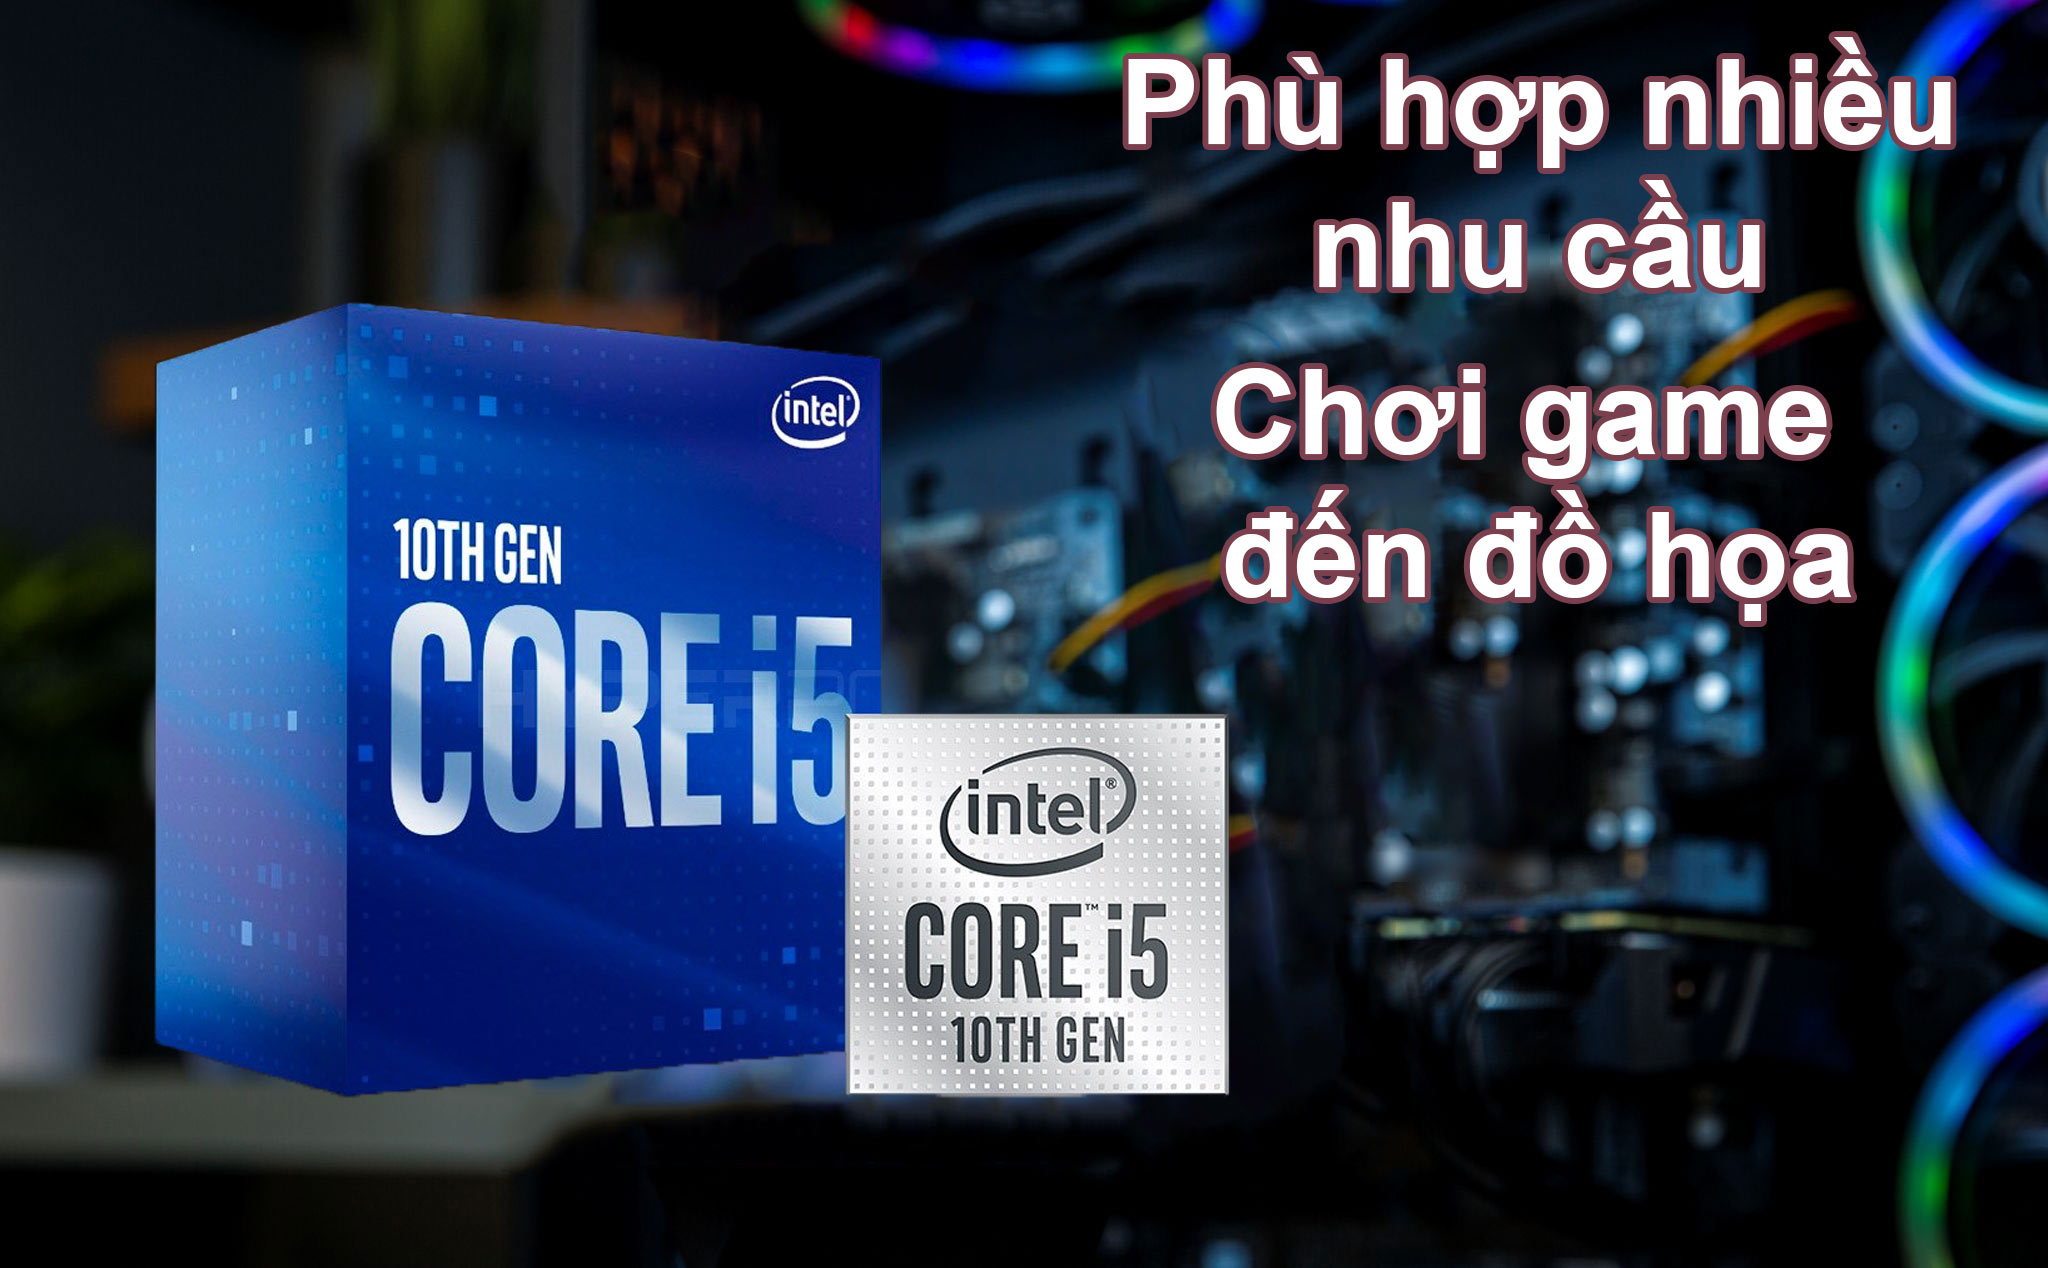 CPU Intel Comet Lake Core i5-10600 | Phù hợp nhiều nhu cầu chơi game đến đồ họa